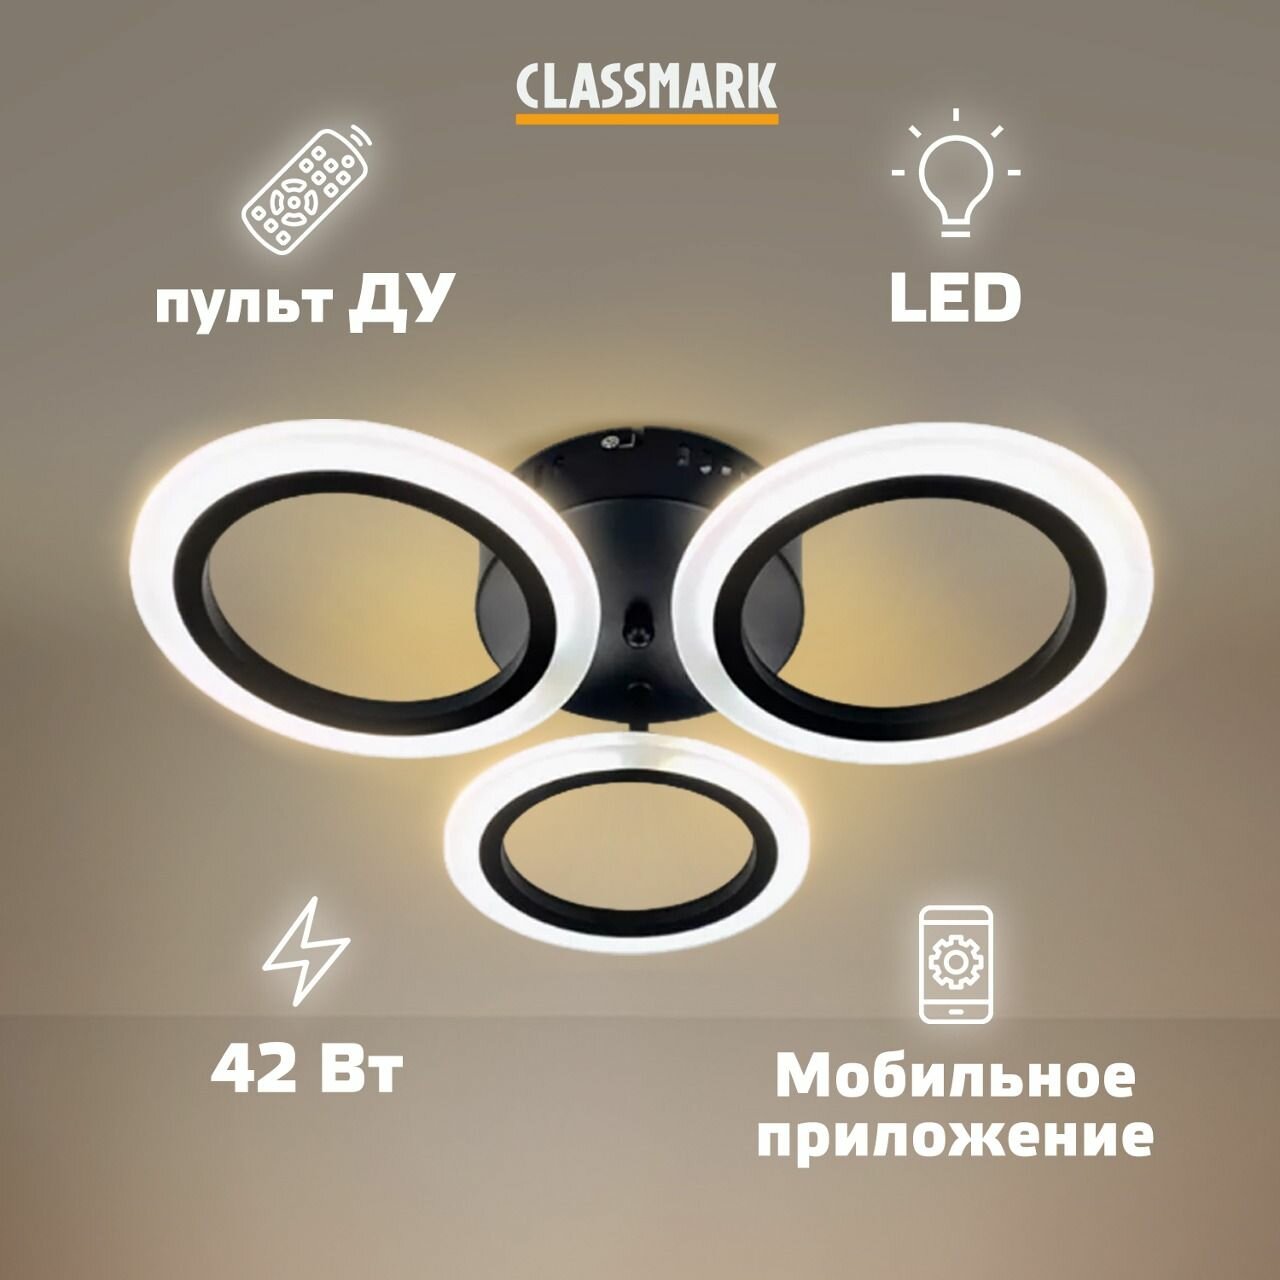 Люстра потолочная светодиодная с пультом, умная Classmark LED светильник на кухню, в гостиную и спальню, зал, управление через смартфон, мощность 42 Вт, декоративная, регулируемая яркость